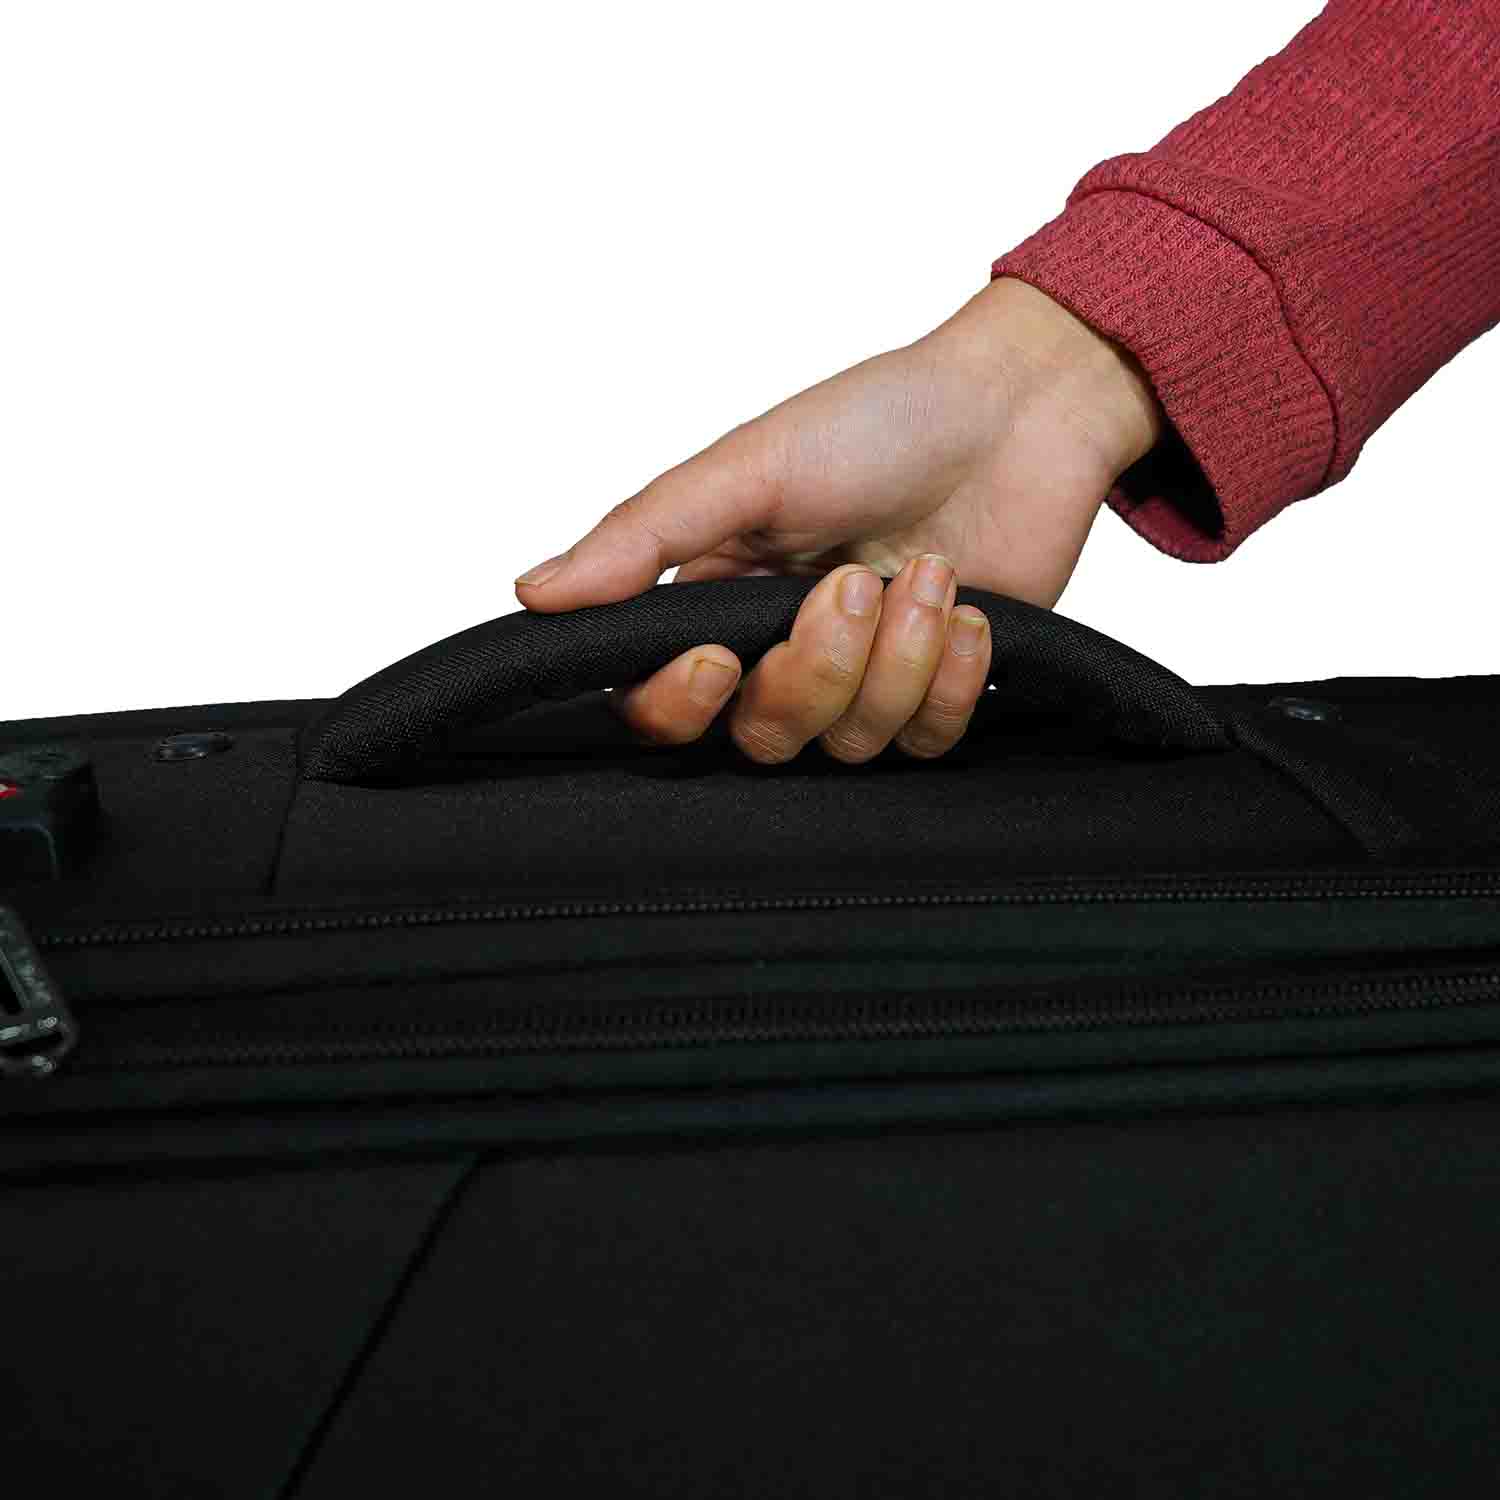 Timus-Lifestyle-Luggage-Soft-Luggage-trolley-bag-Flash-Plus-Luggage-Trolley-Bag-58cm-Black-4